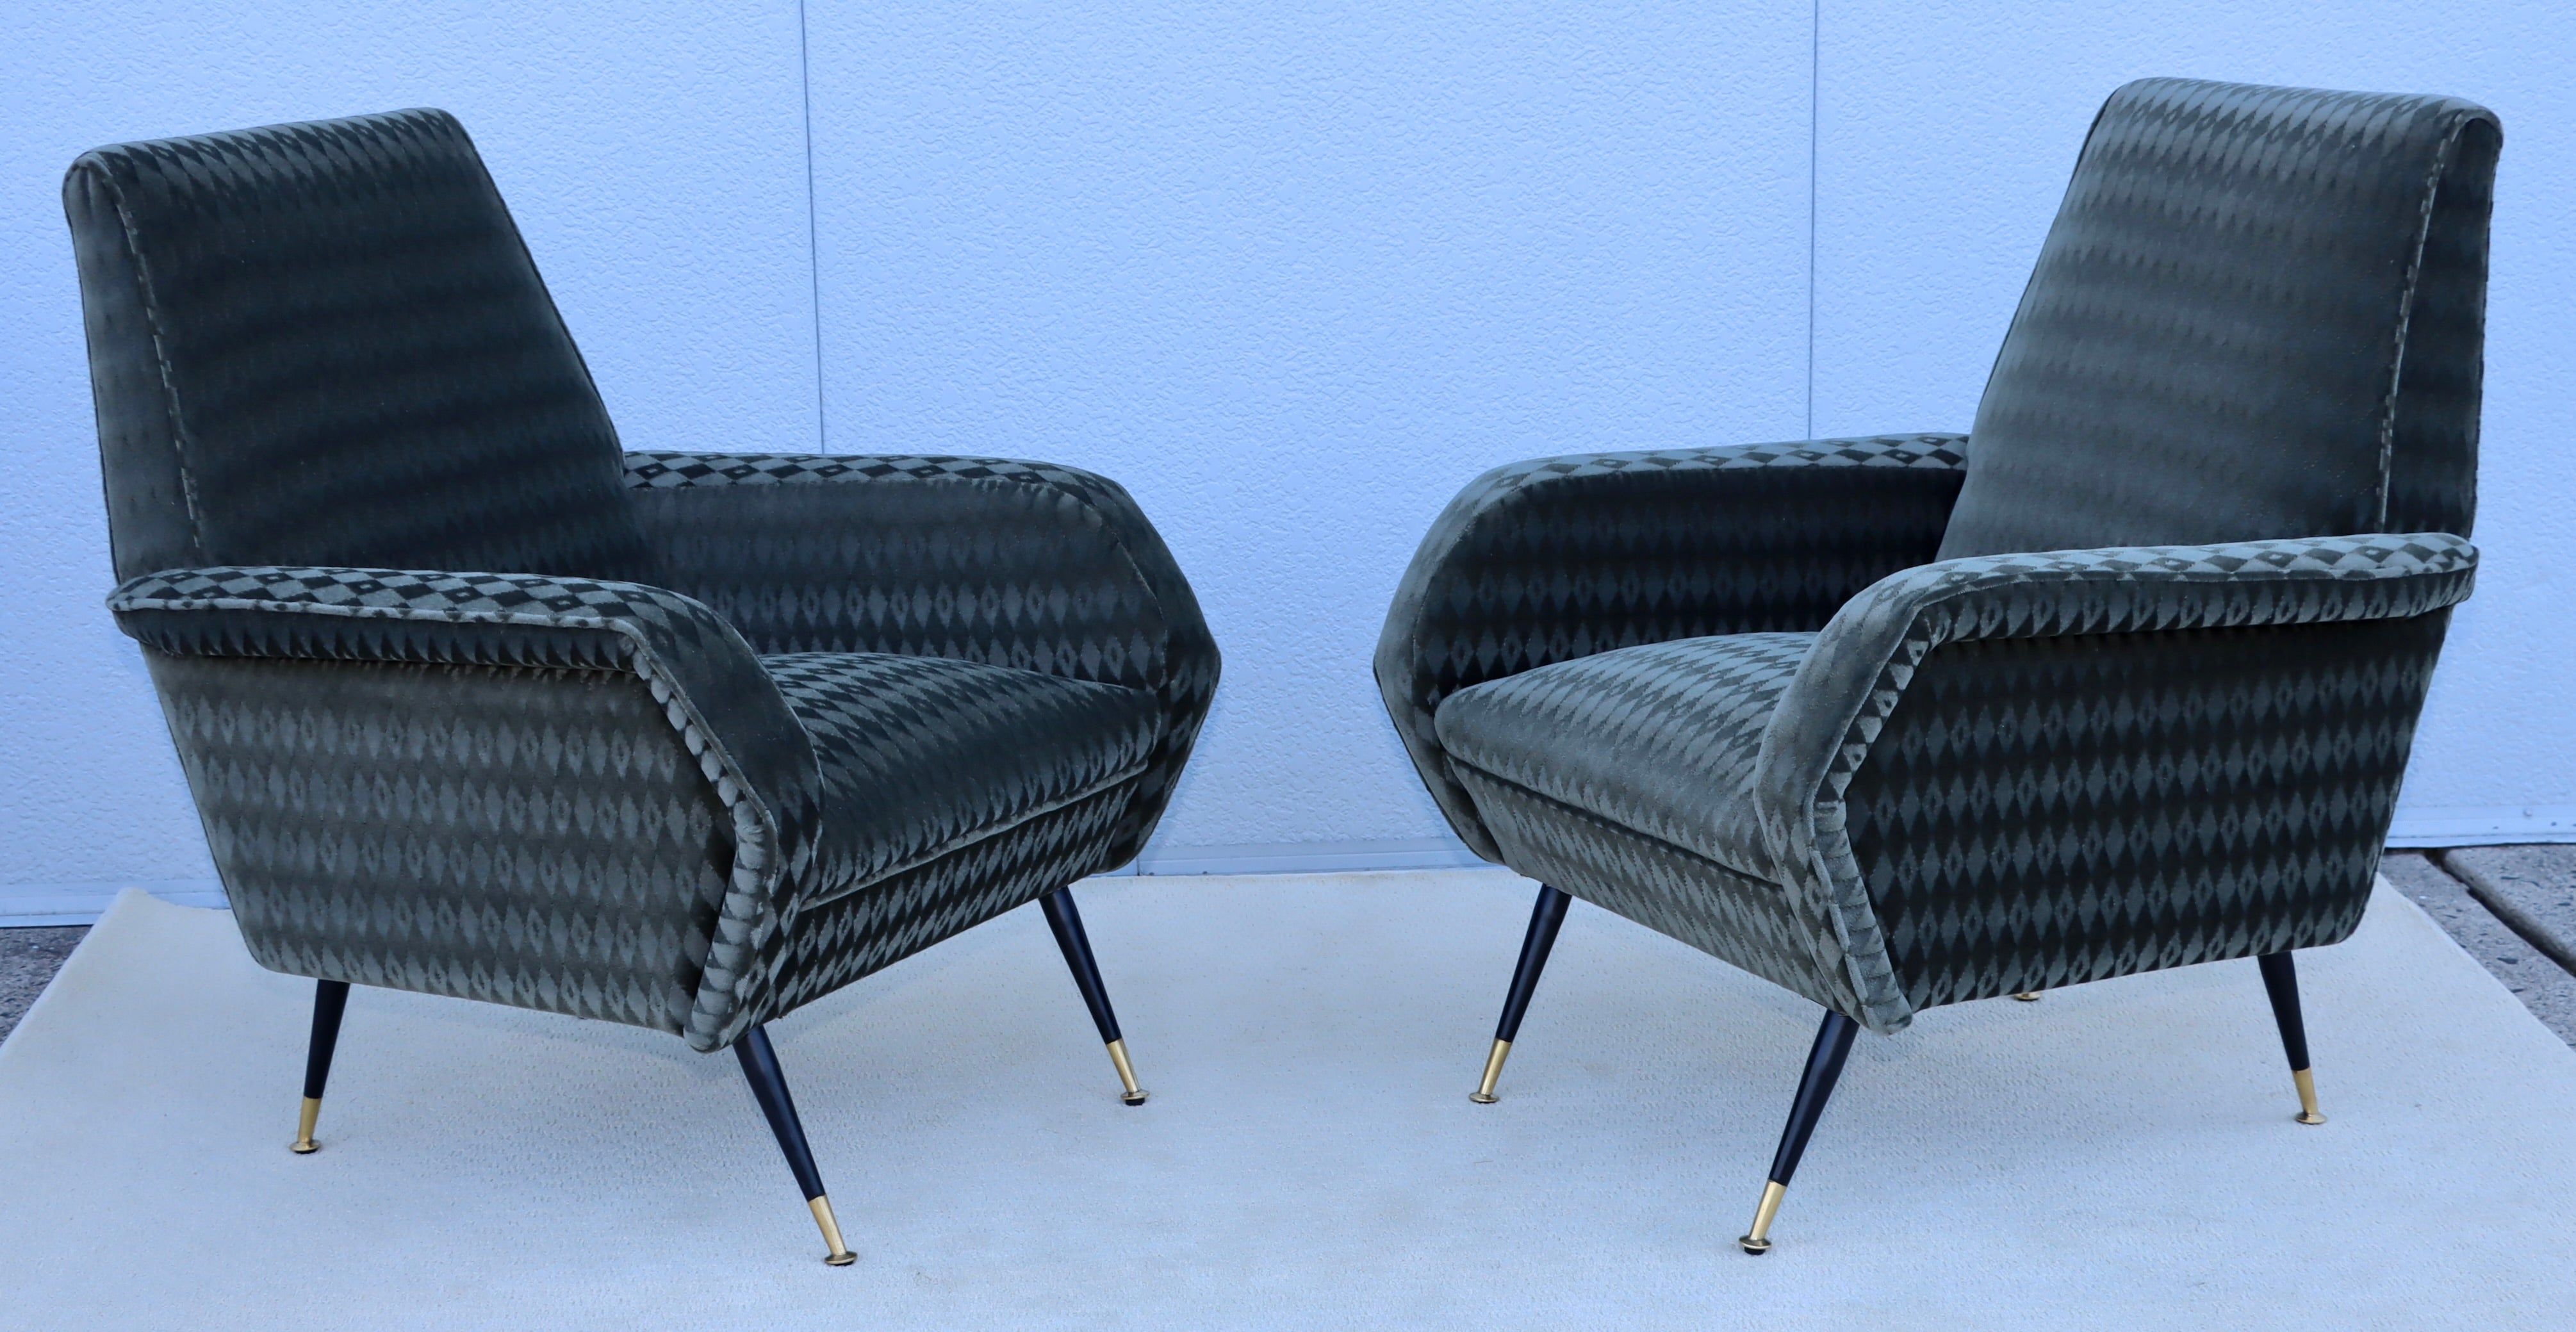 Magnifique paire de chaises longues italiennes des années 1950 dans le style de Marco Zanuso, entièrement restaurées et retapissées en tissu Mohair de Donghia, avec une usure mineure et une patine due à l'âge et à l'utilisation.